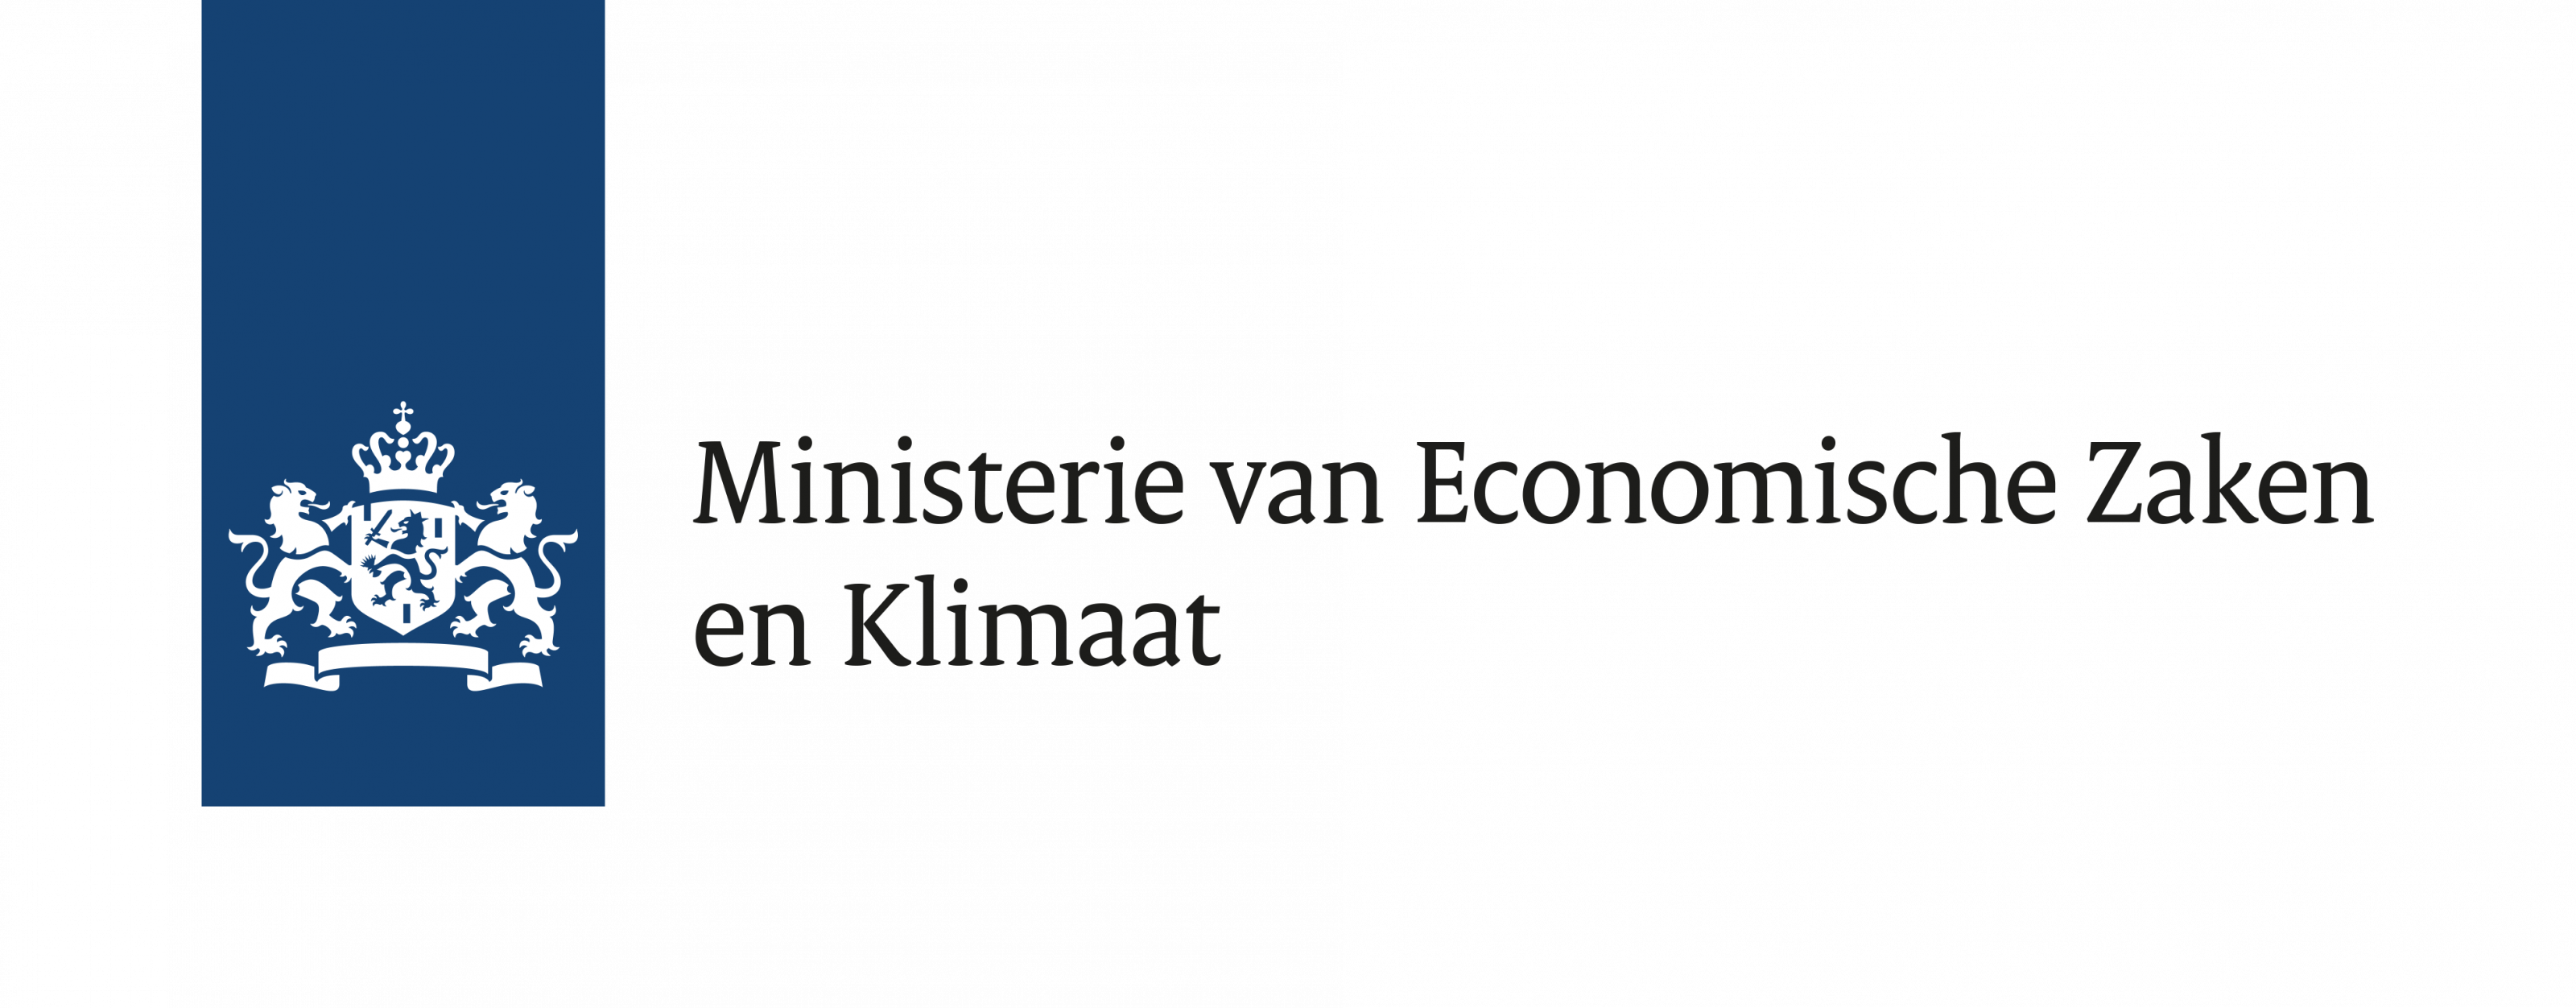 Ministerie van Economische Zaken en Klimaat